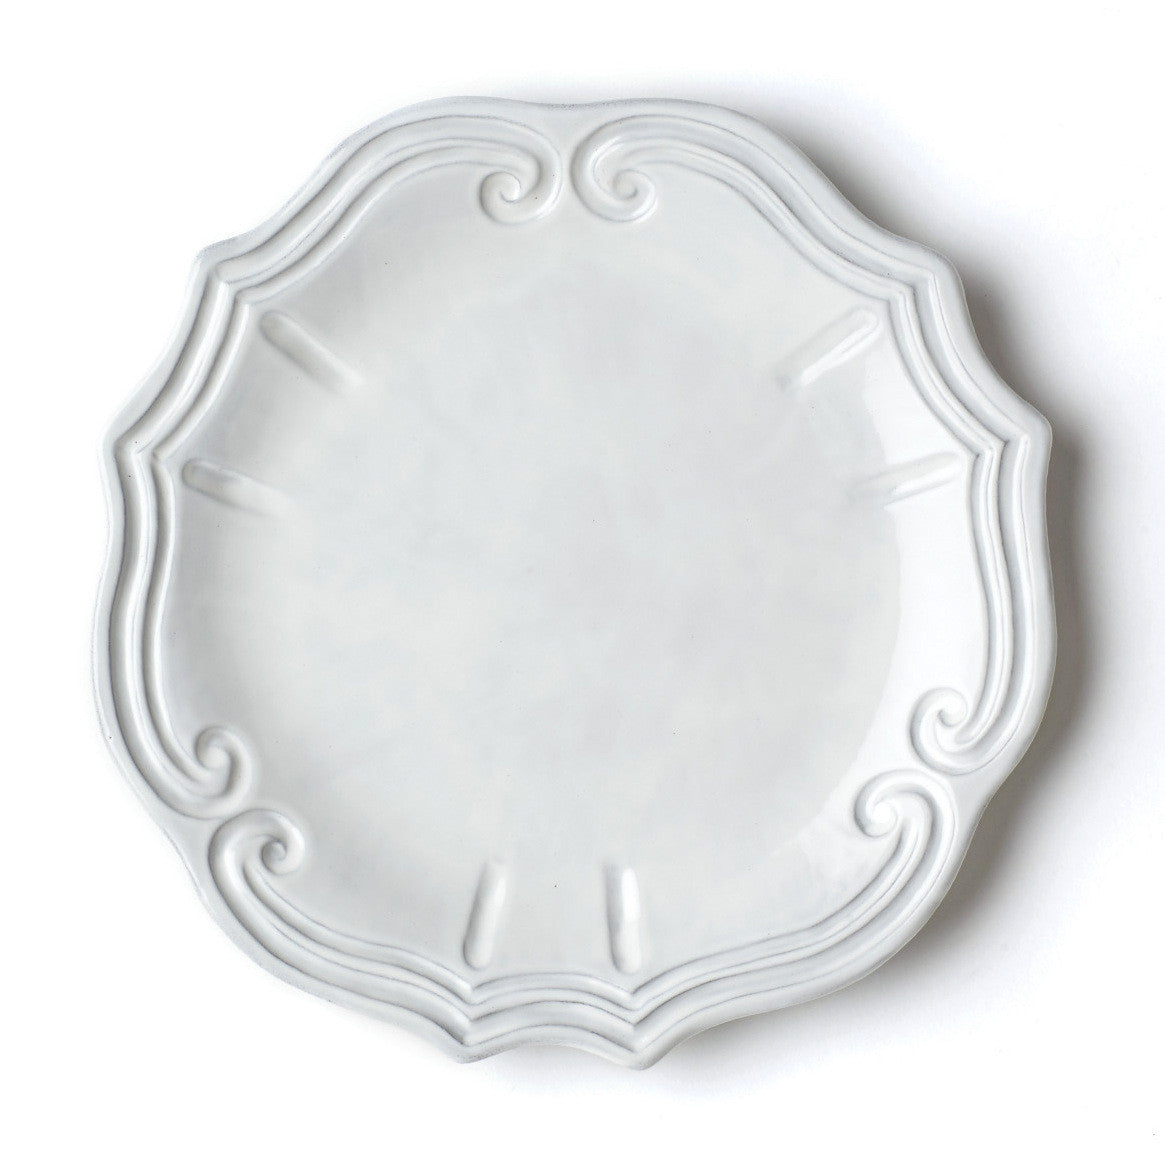 VIETRI: Incanto Ruffle European Dinner Plate - Artistica.com